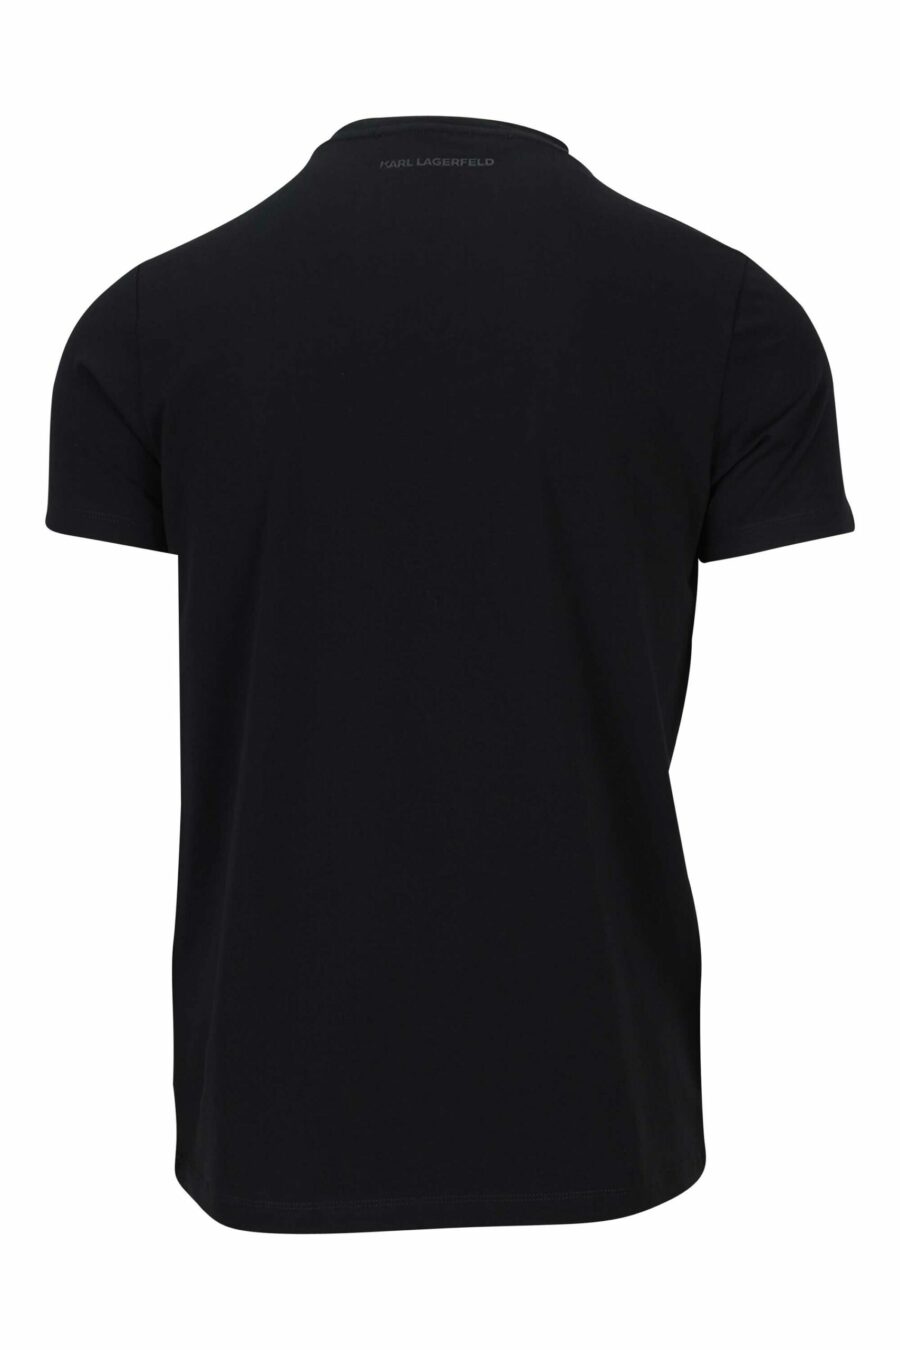 Camiseta negra con logo centrado blanco - 4062226676205 1 1 scaled